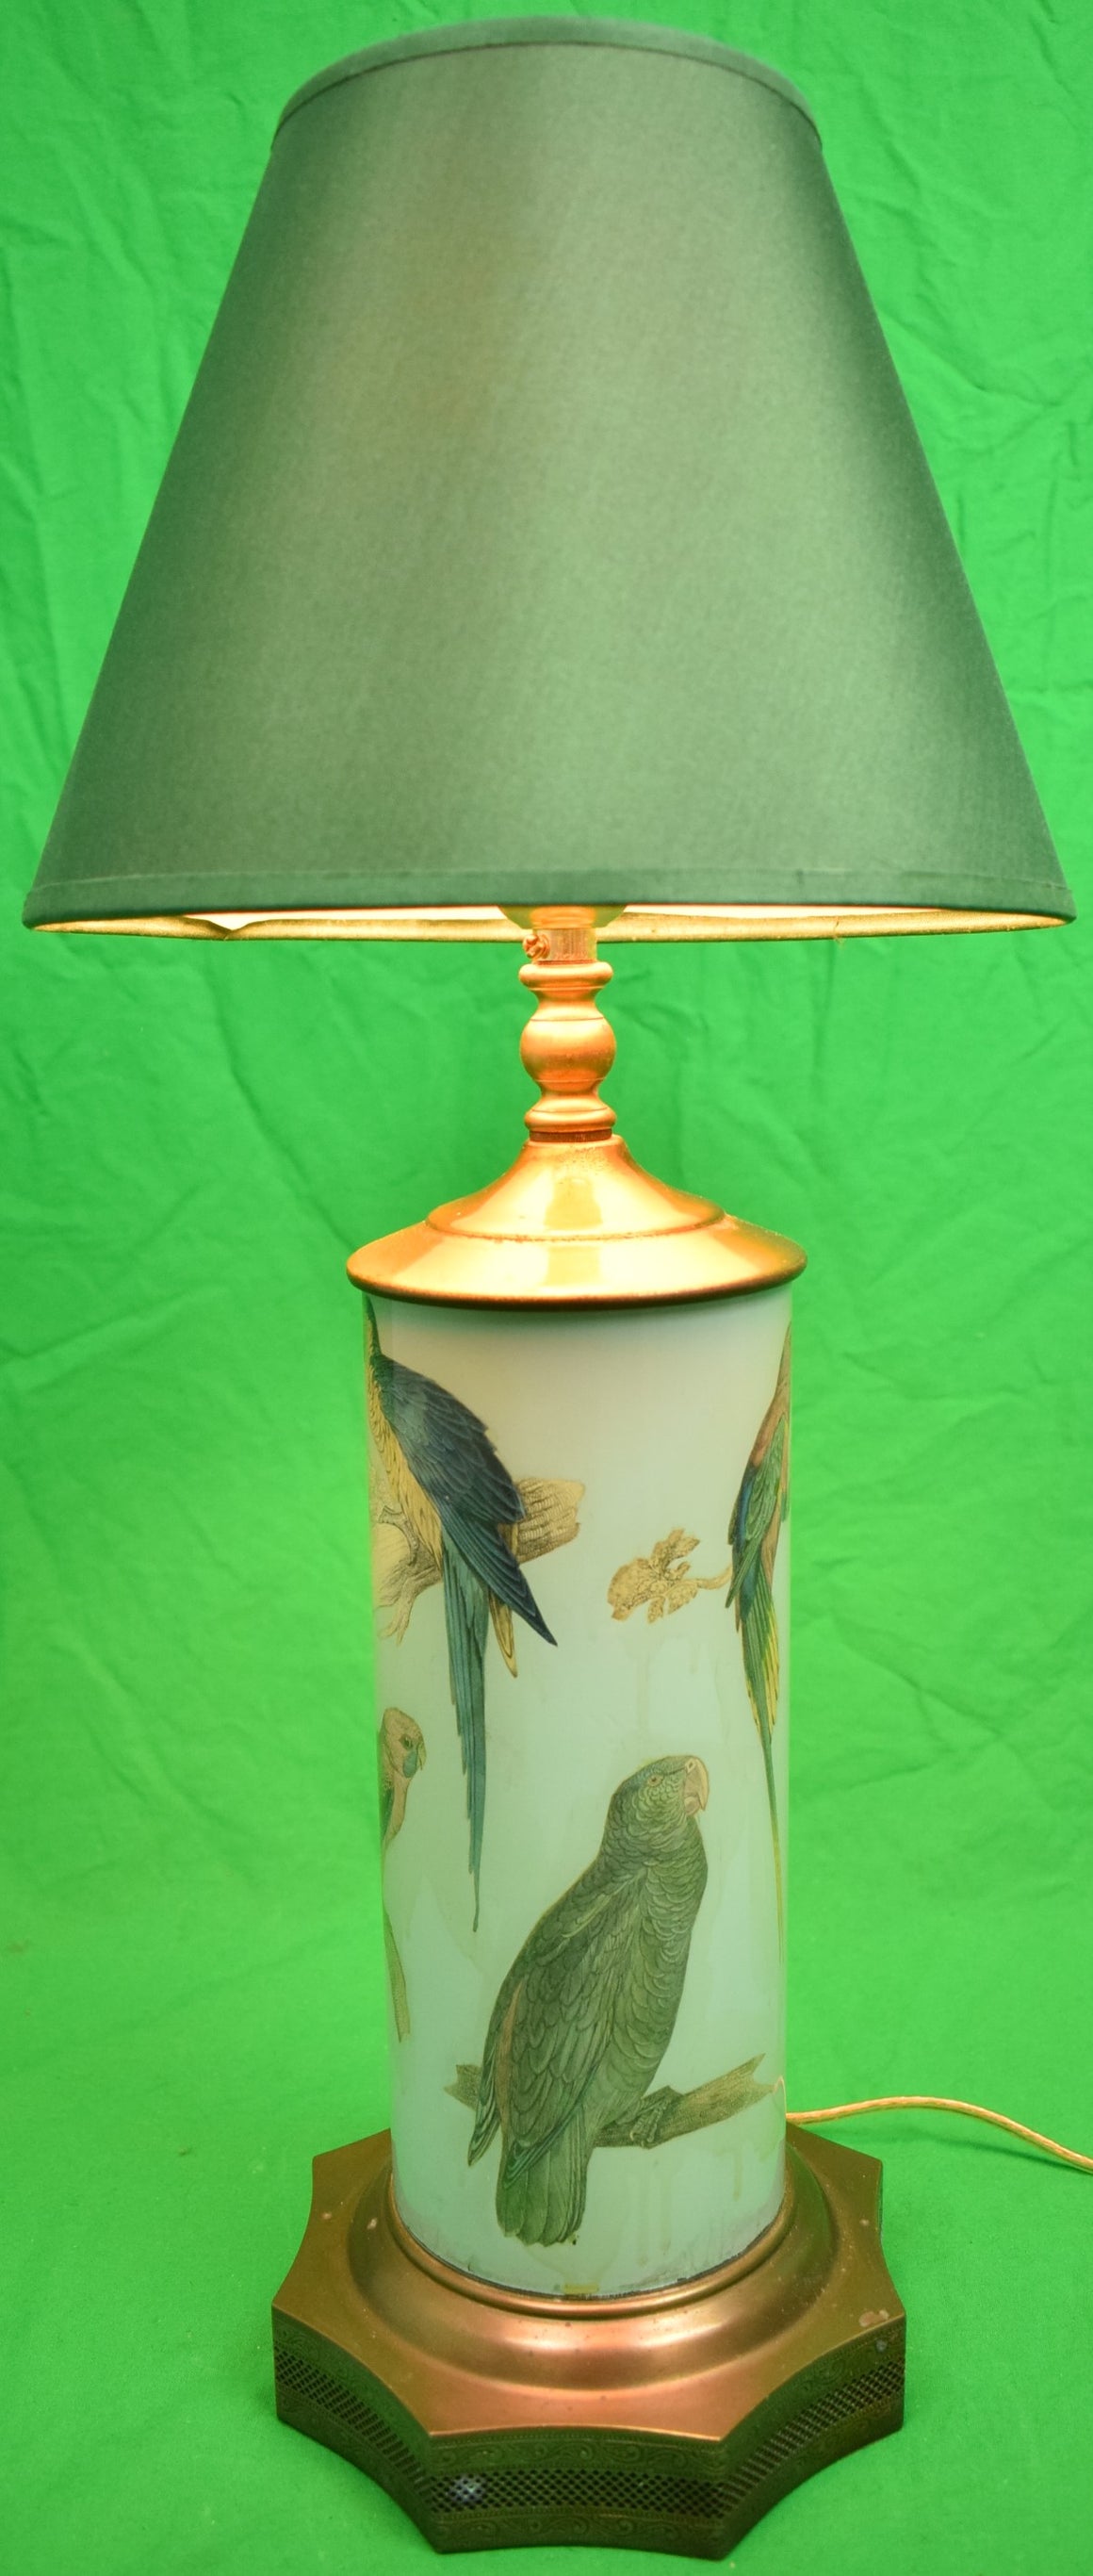 Blue Parrots Decoupage Lamp